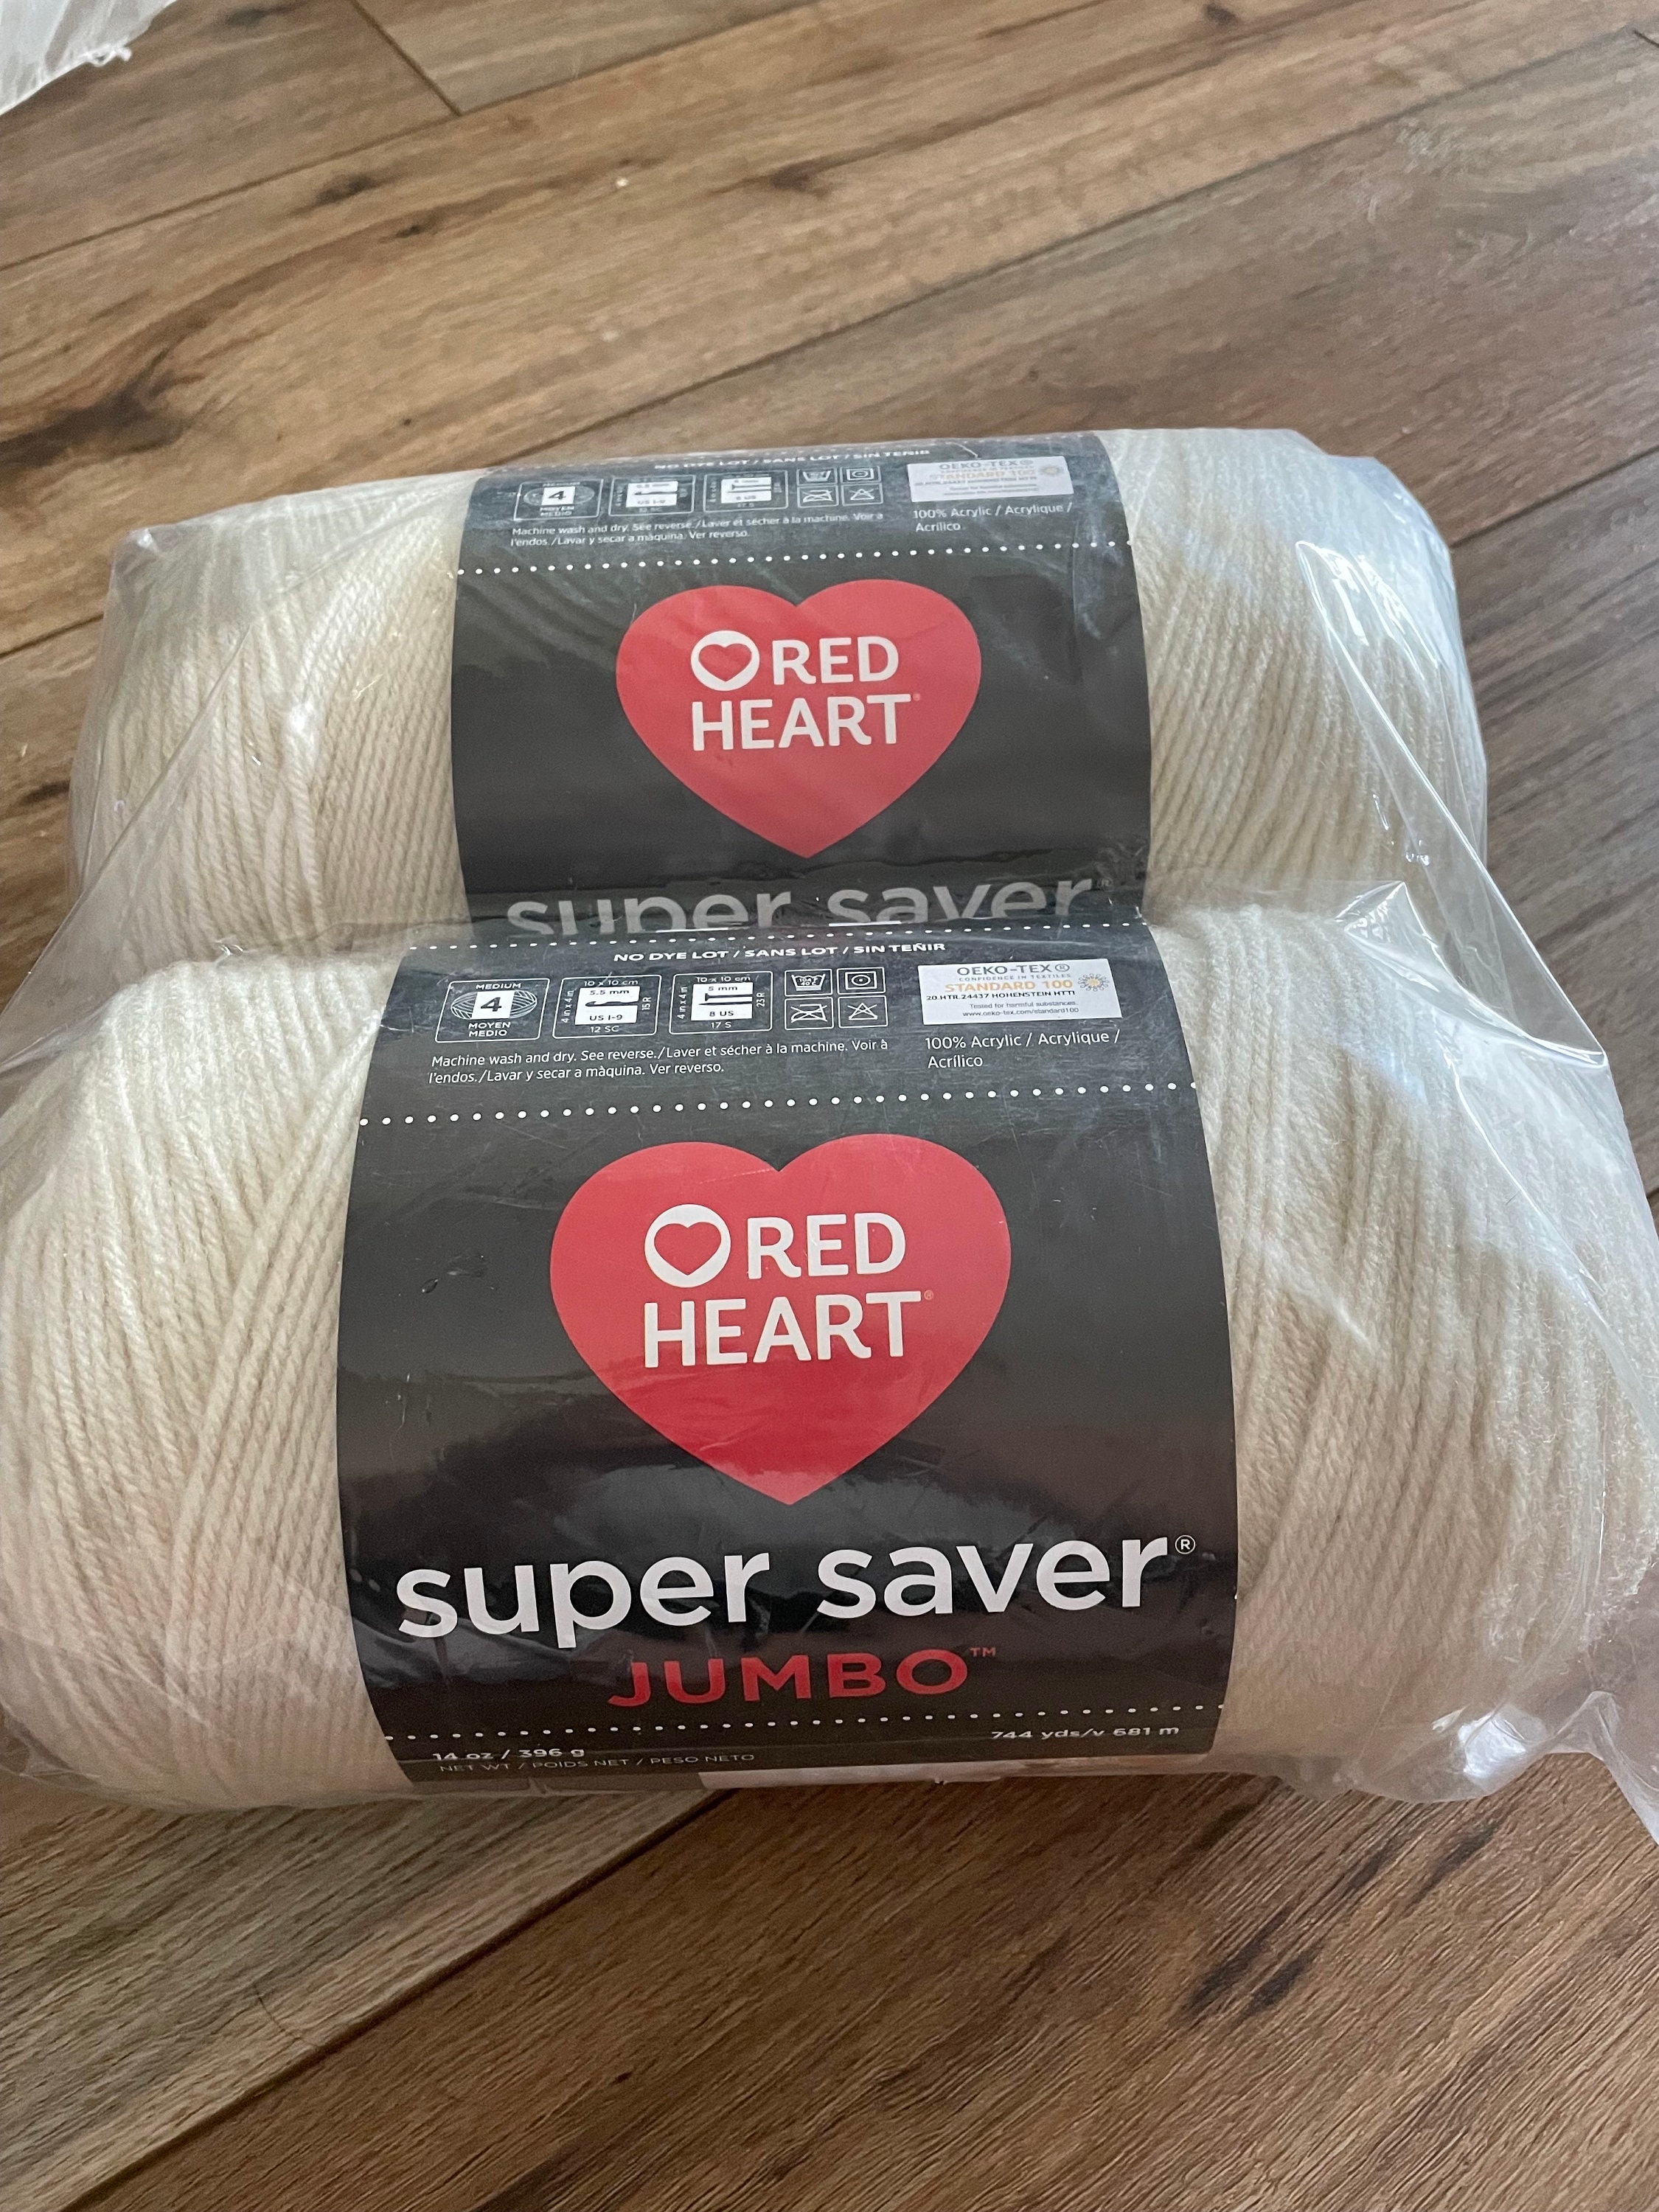 Red Heart Super Saver Yarn Acrylic Yarn, Crochet Yarn, Knitting